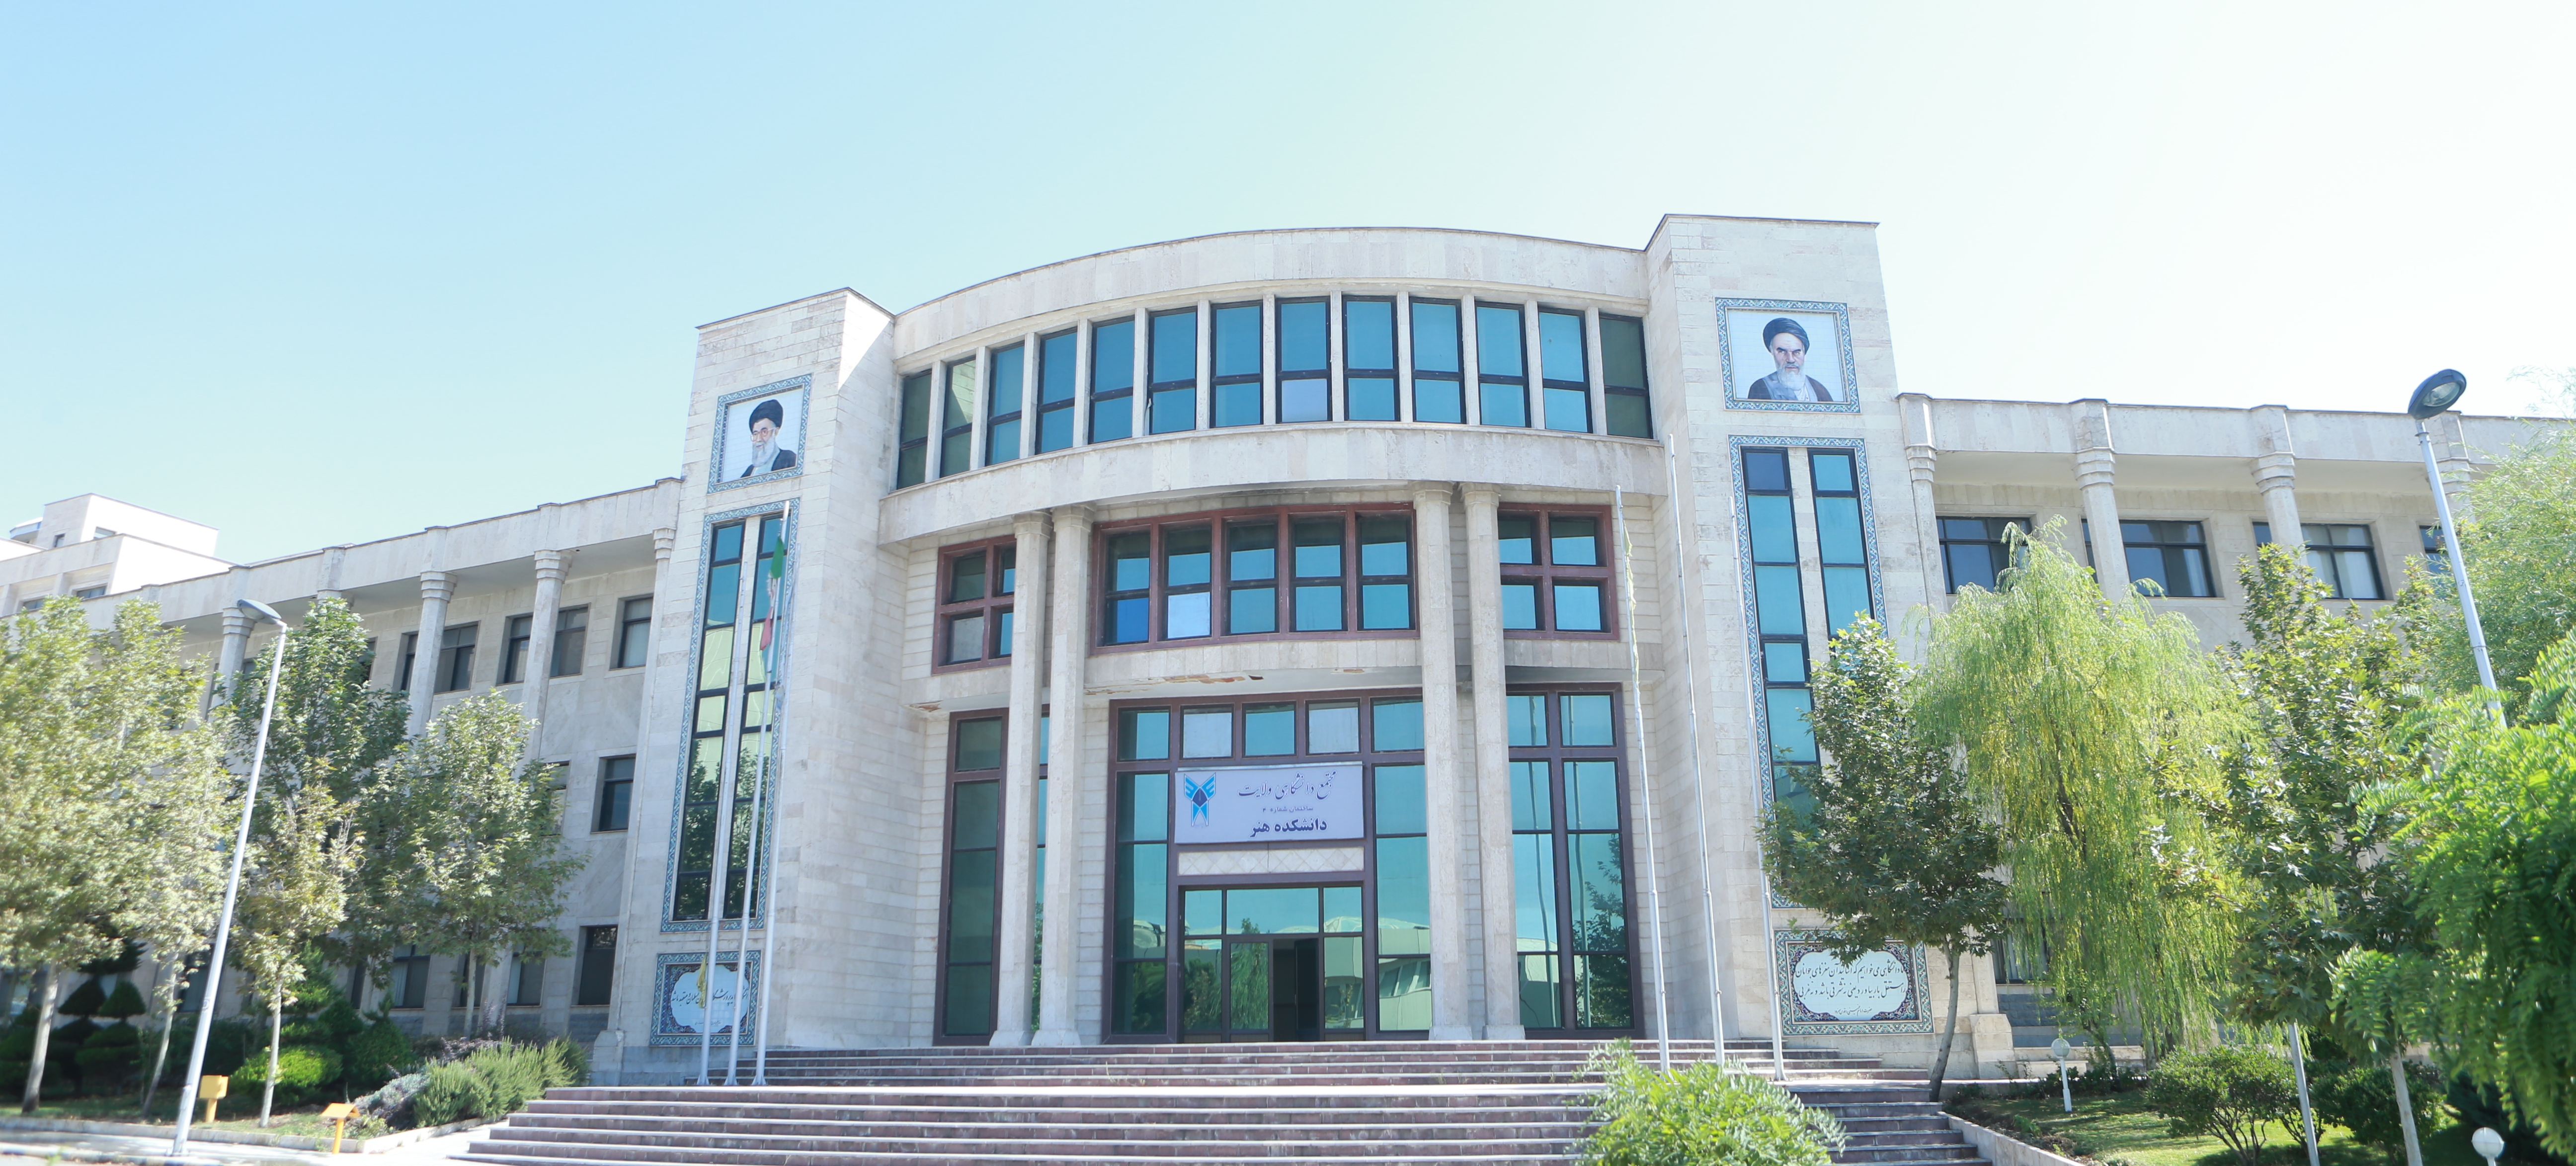 دانشکده روانشناسی دانشگاه آزاد واحد تهران مرک